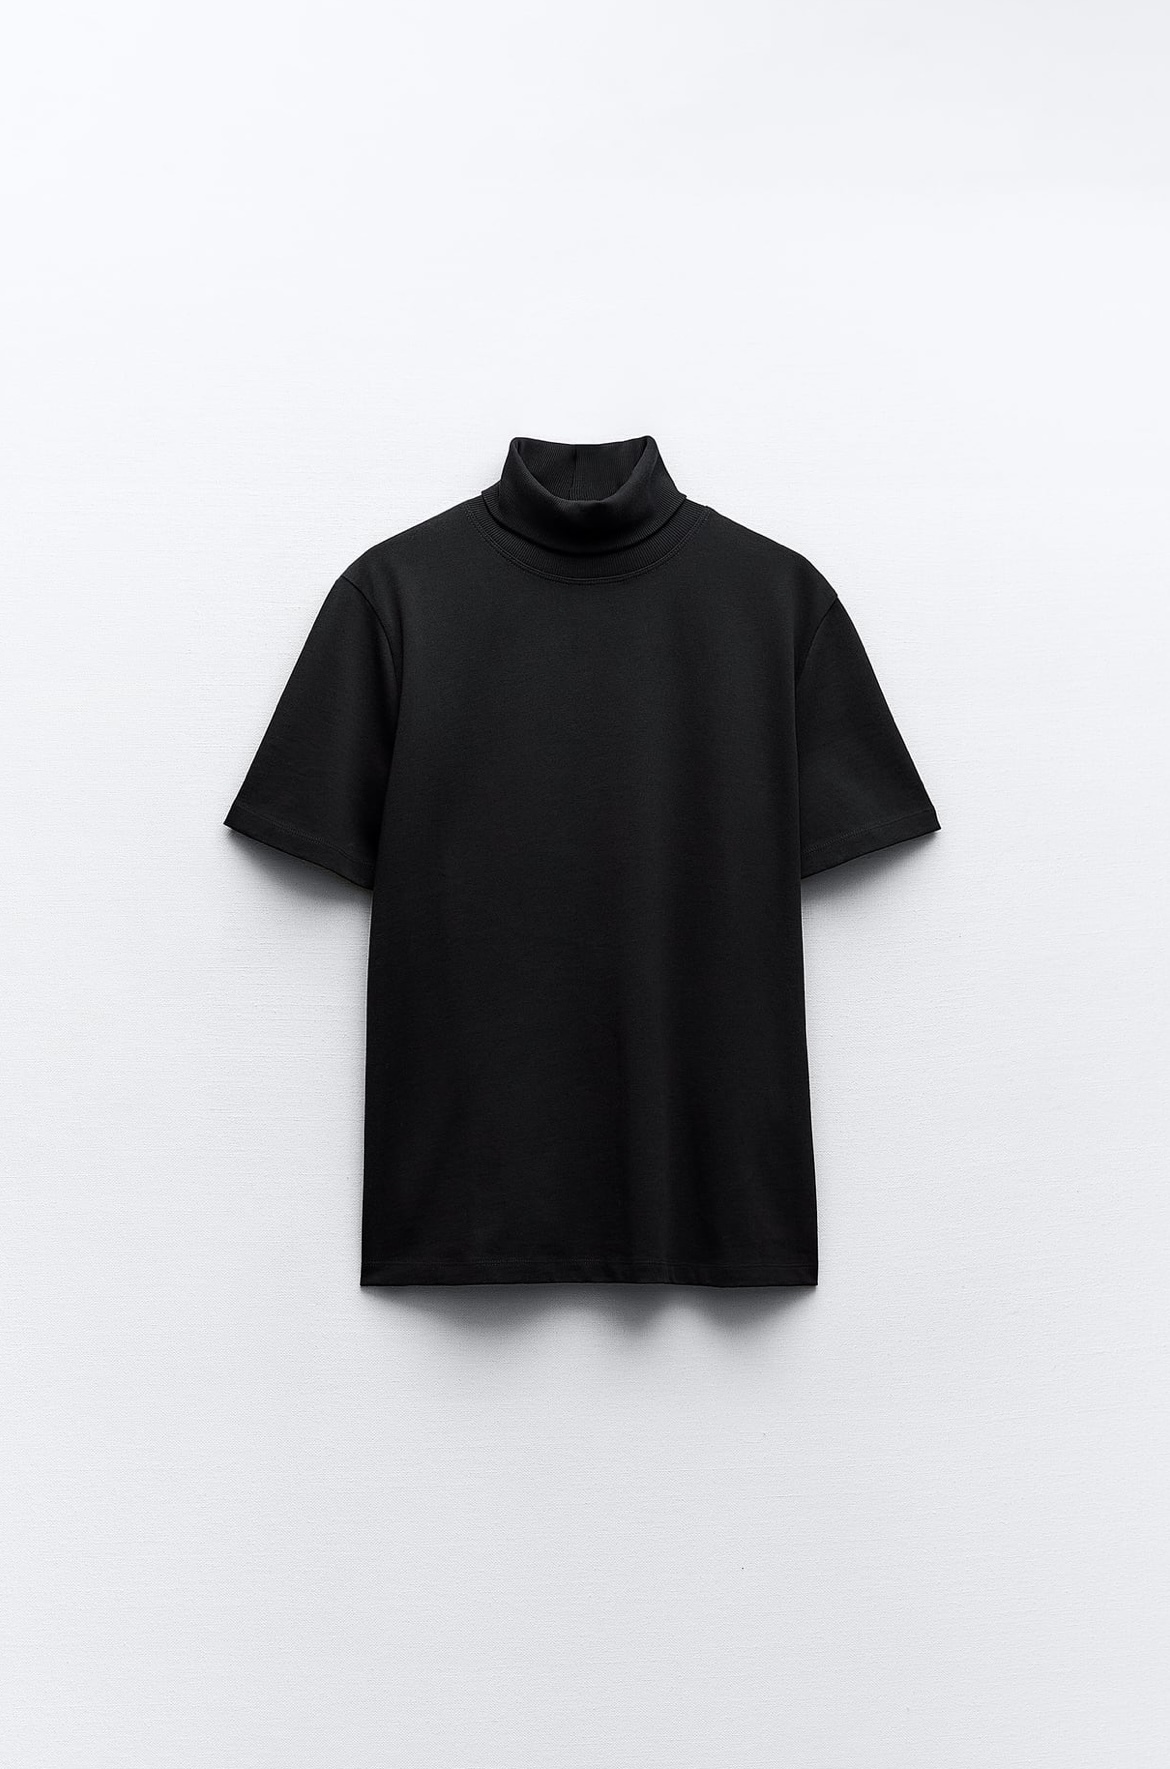 Camiseta Heavy Cotton con cuello alto de Zara (12,95 euros)